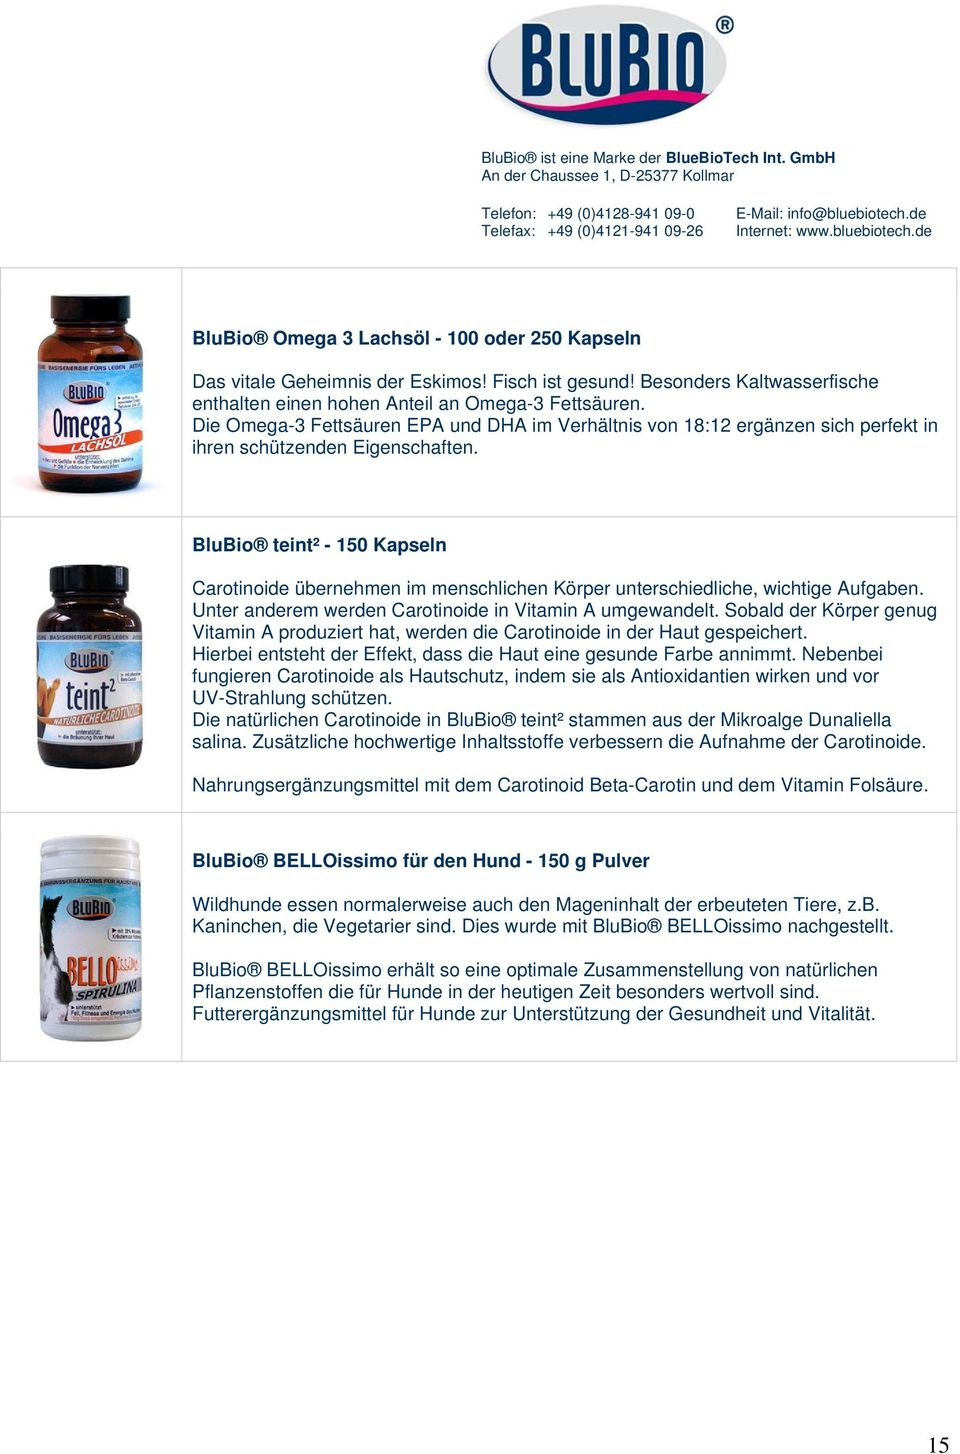 BluBio teint² - 150 Kapseln Carotinoide übernehmen im menschlichen Körper unterschiedliche, wichtige Aufgaben. Unter anderem werden Carotinoide in Vitamin A umgewandelt.